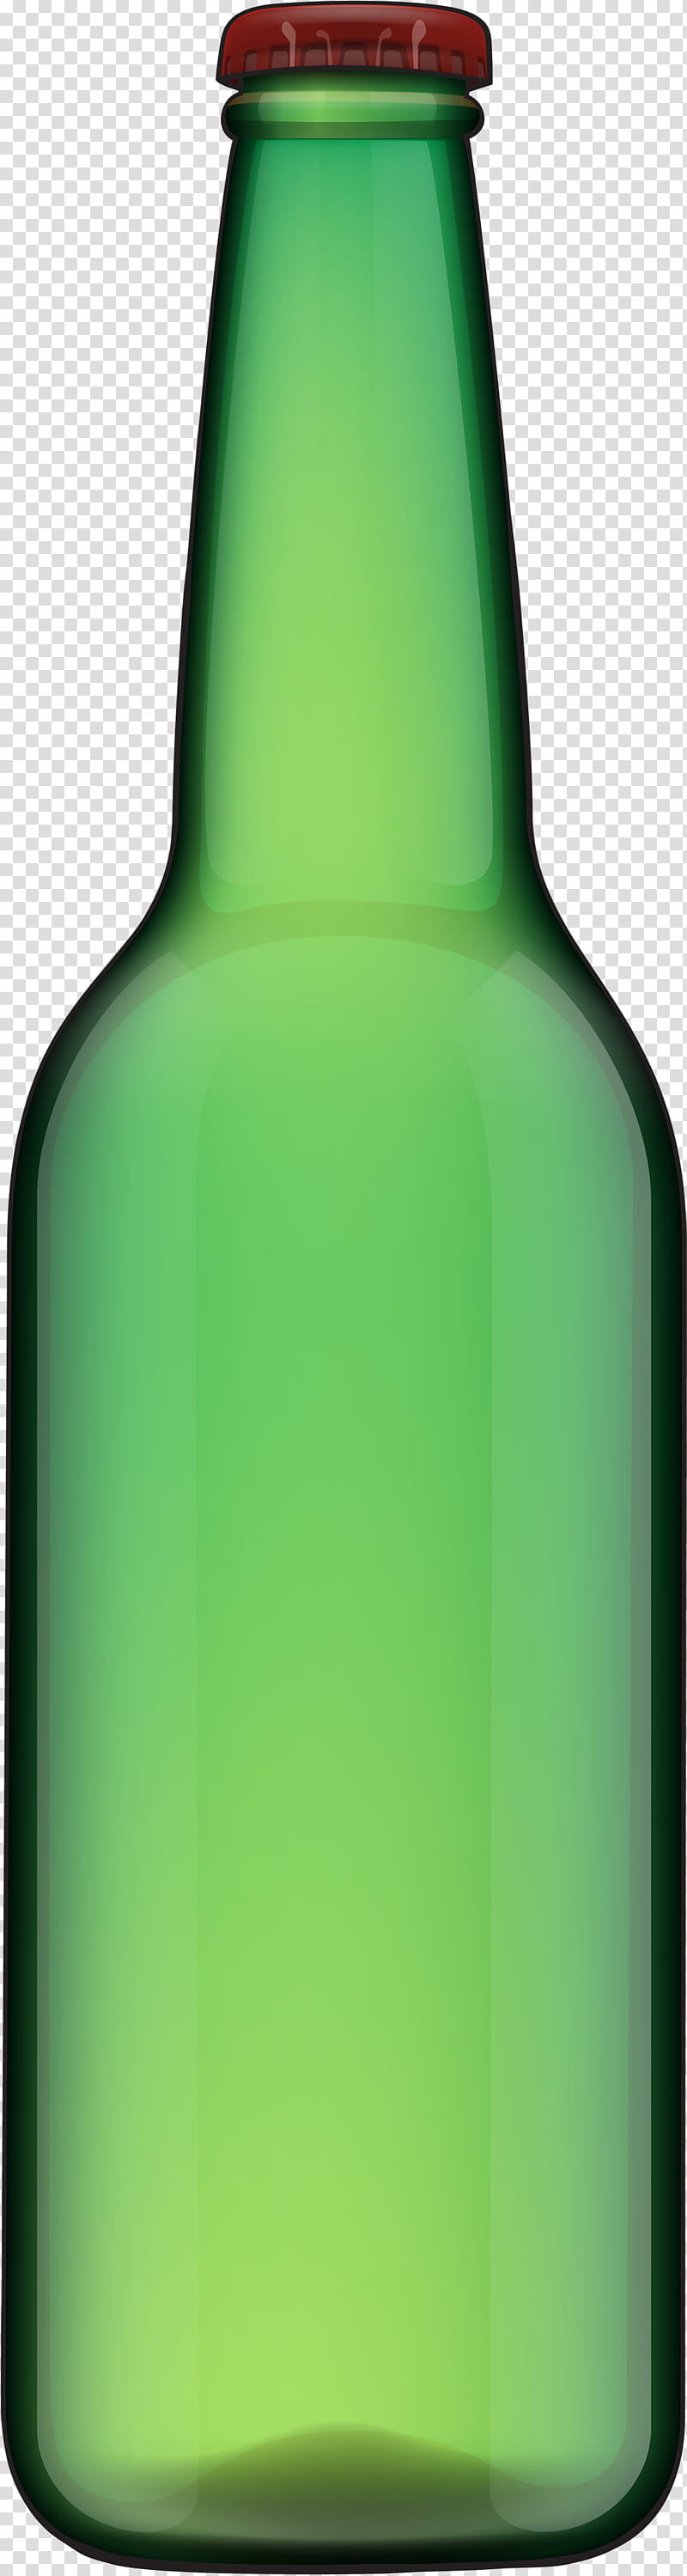 Plastic Bottle, Glass Bottle, Beer, Beer Bottle, Green, Vase, Liqueur, Wine Bottle transparent background PNG clipart